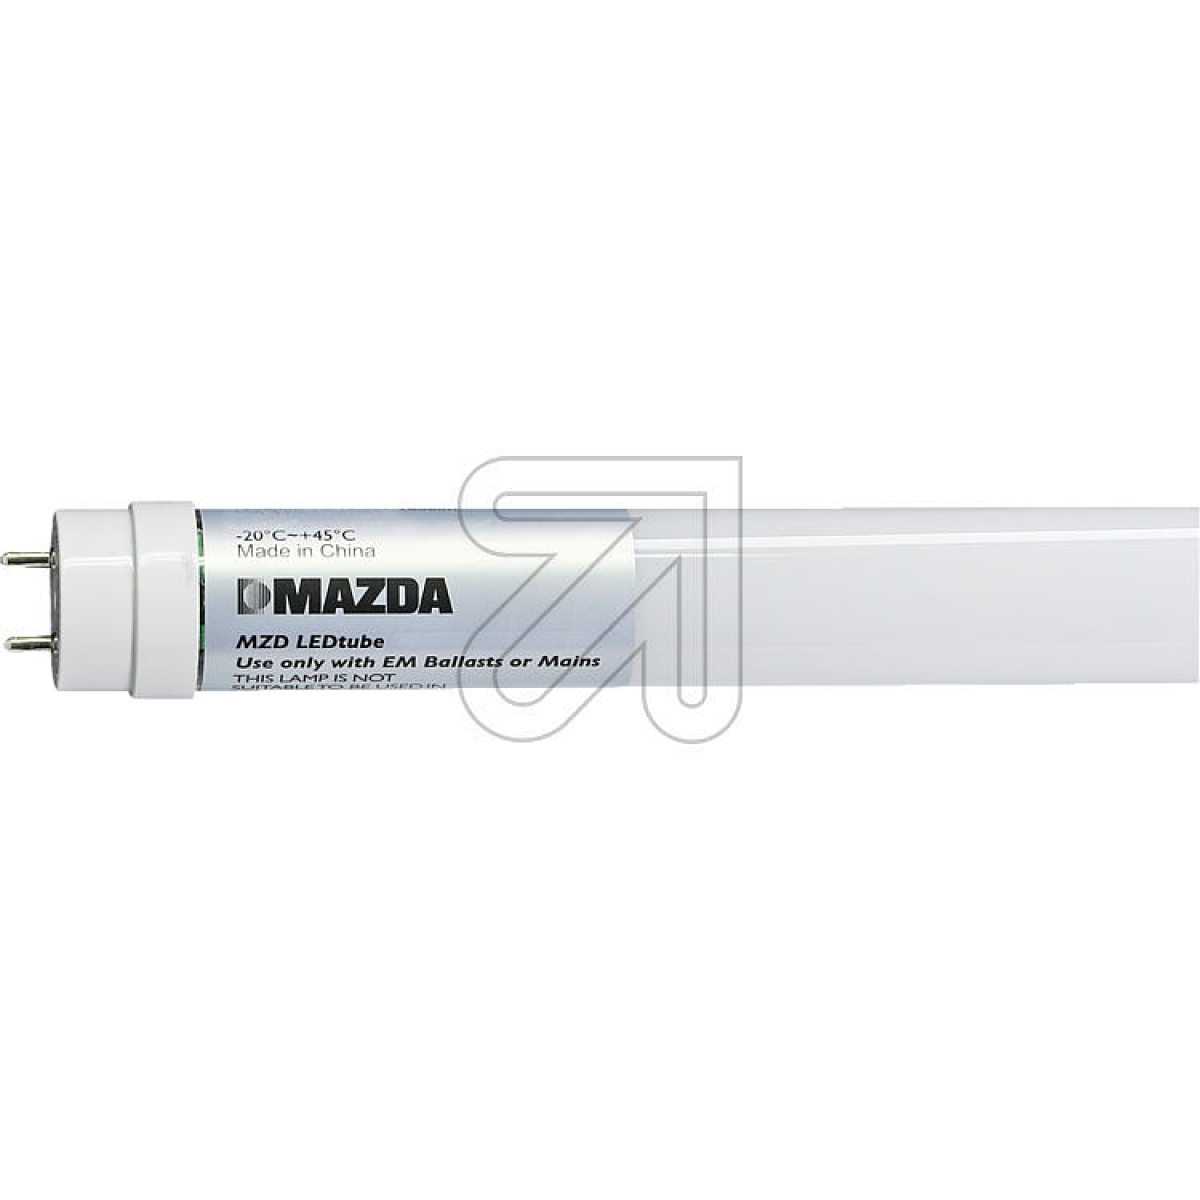 MAZDA LightingMAZDA LEDtube T8 1500mm UO 31.5W 865 54380200-Preis für 20 StückArtikel-Nr: 523045